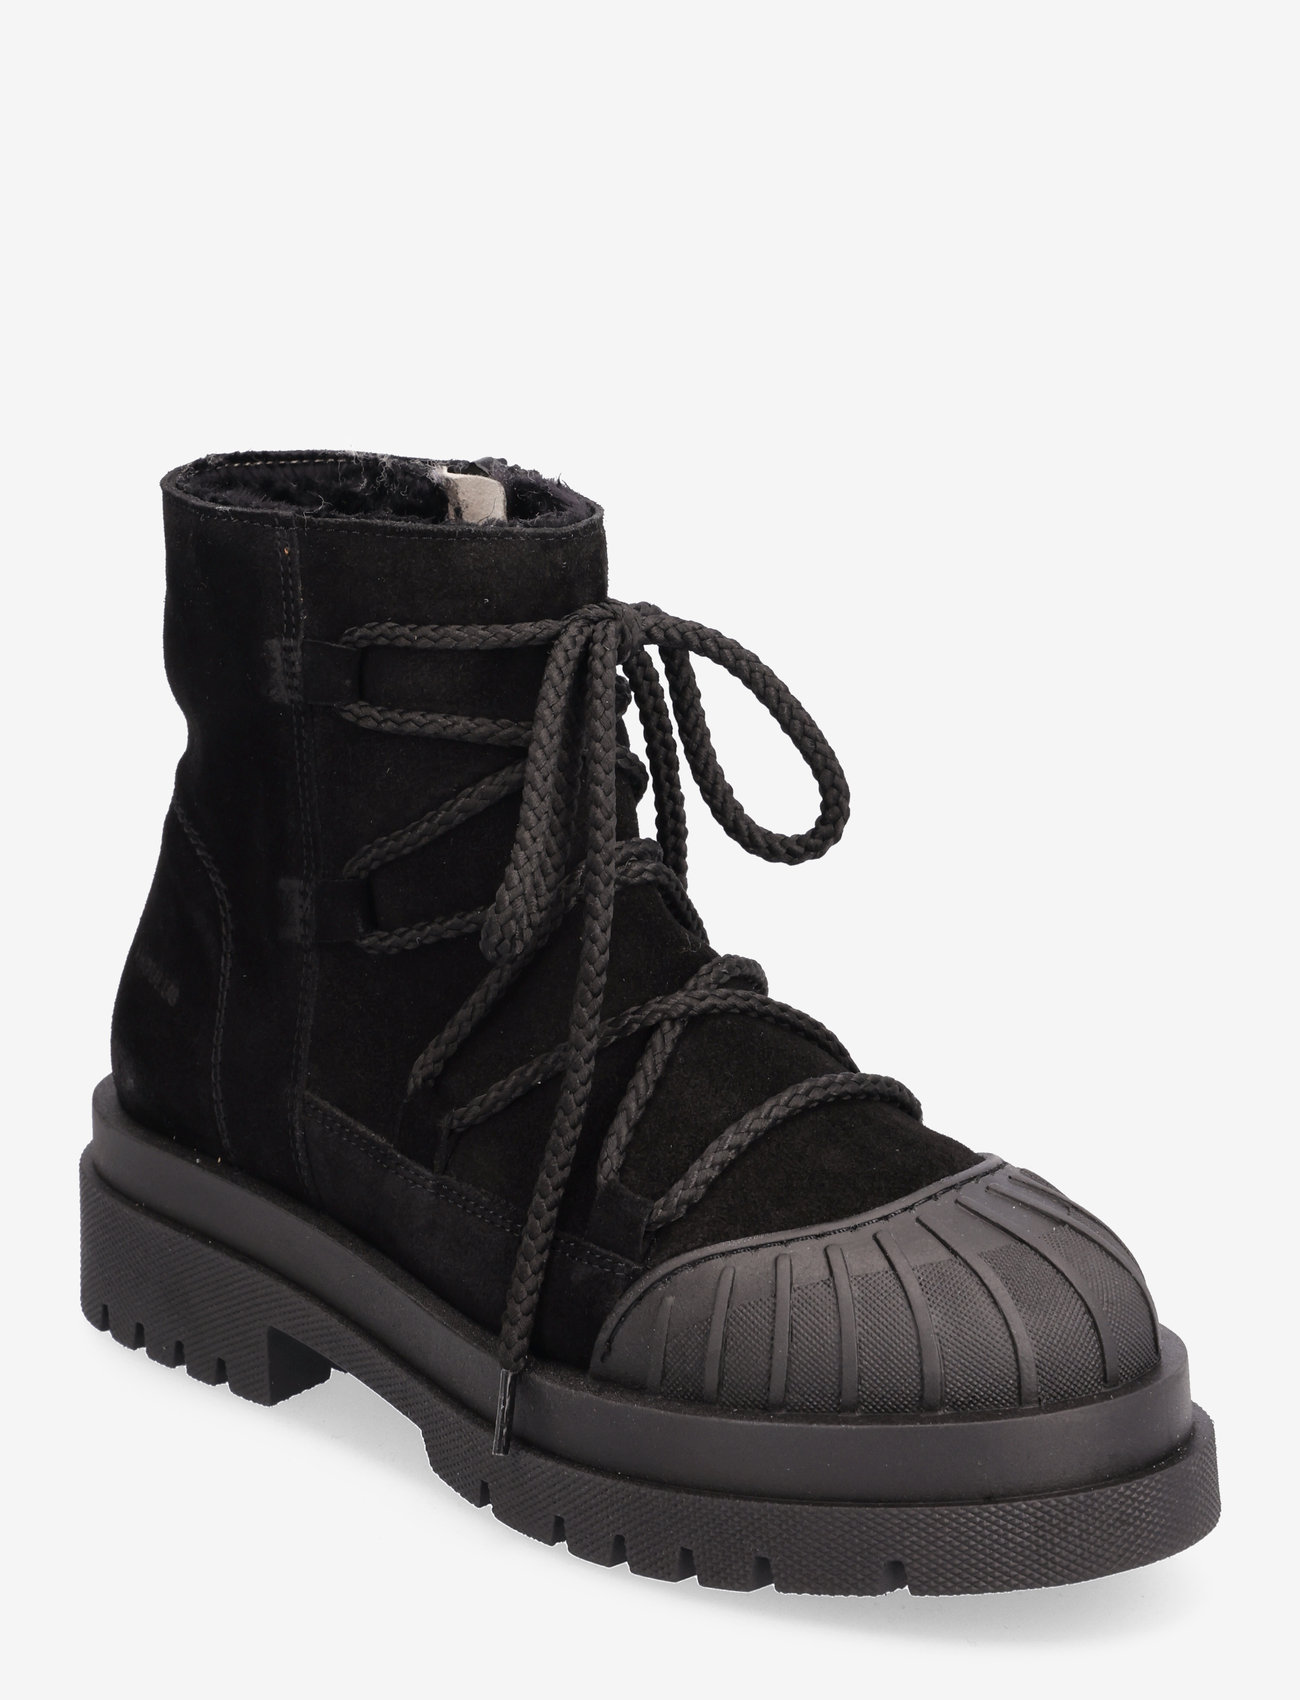 ANGULUS - Boots - flat - laced boots - 1163/2014 black/black lamb woo - 0